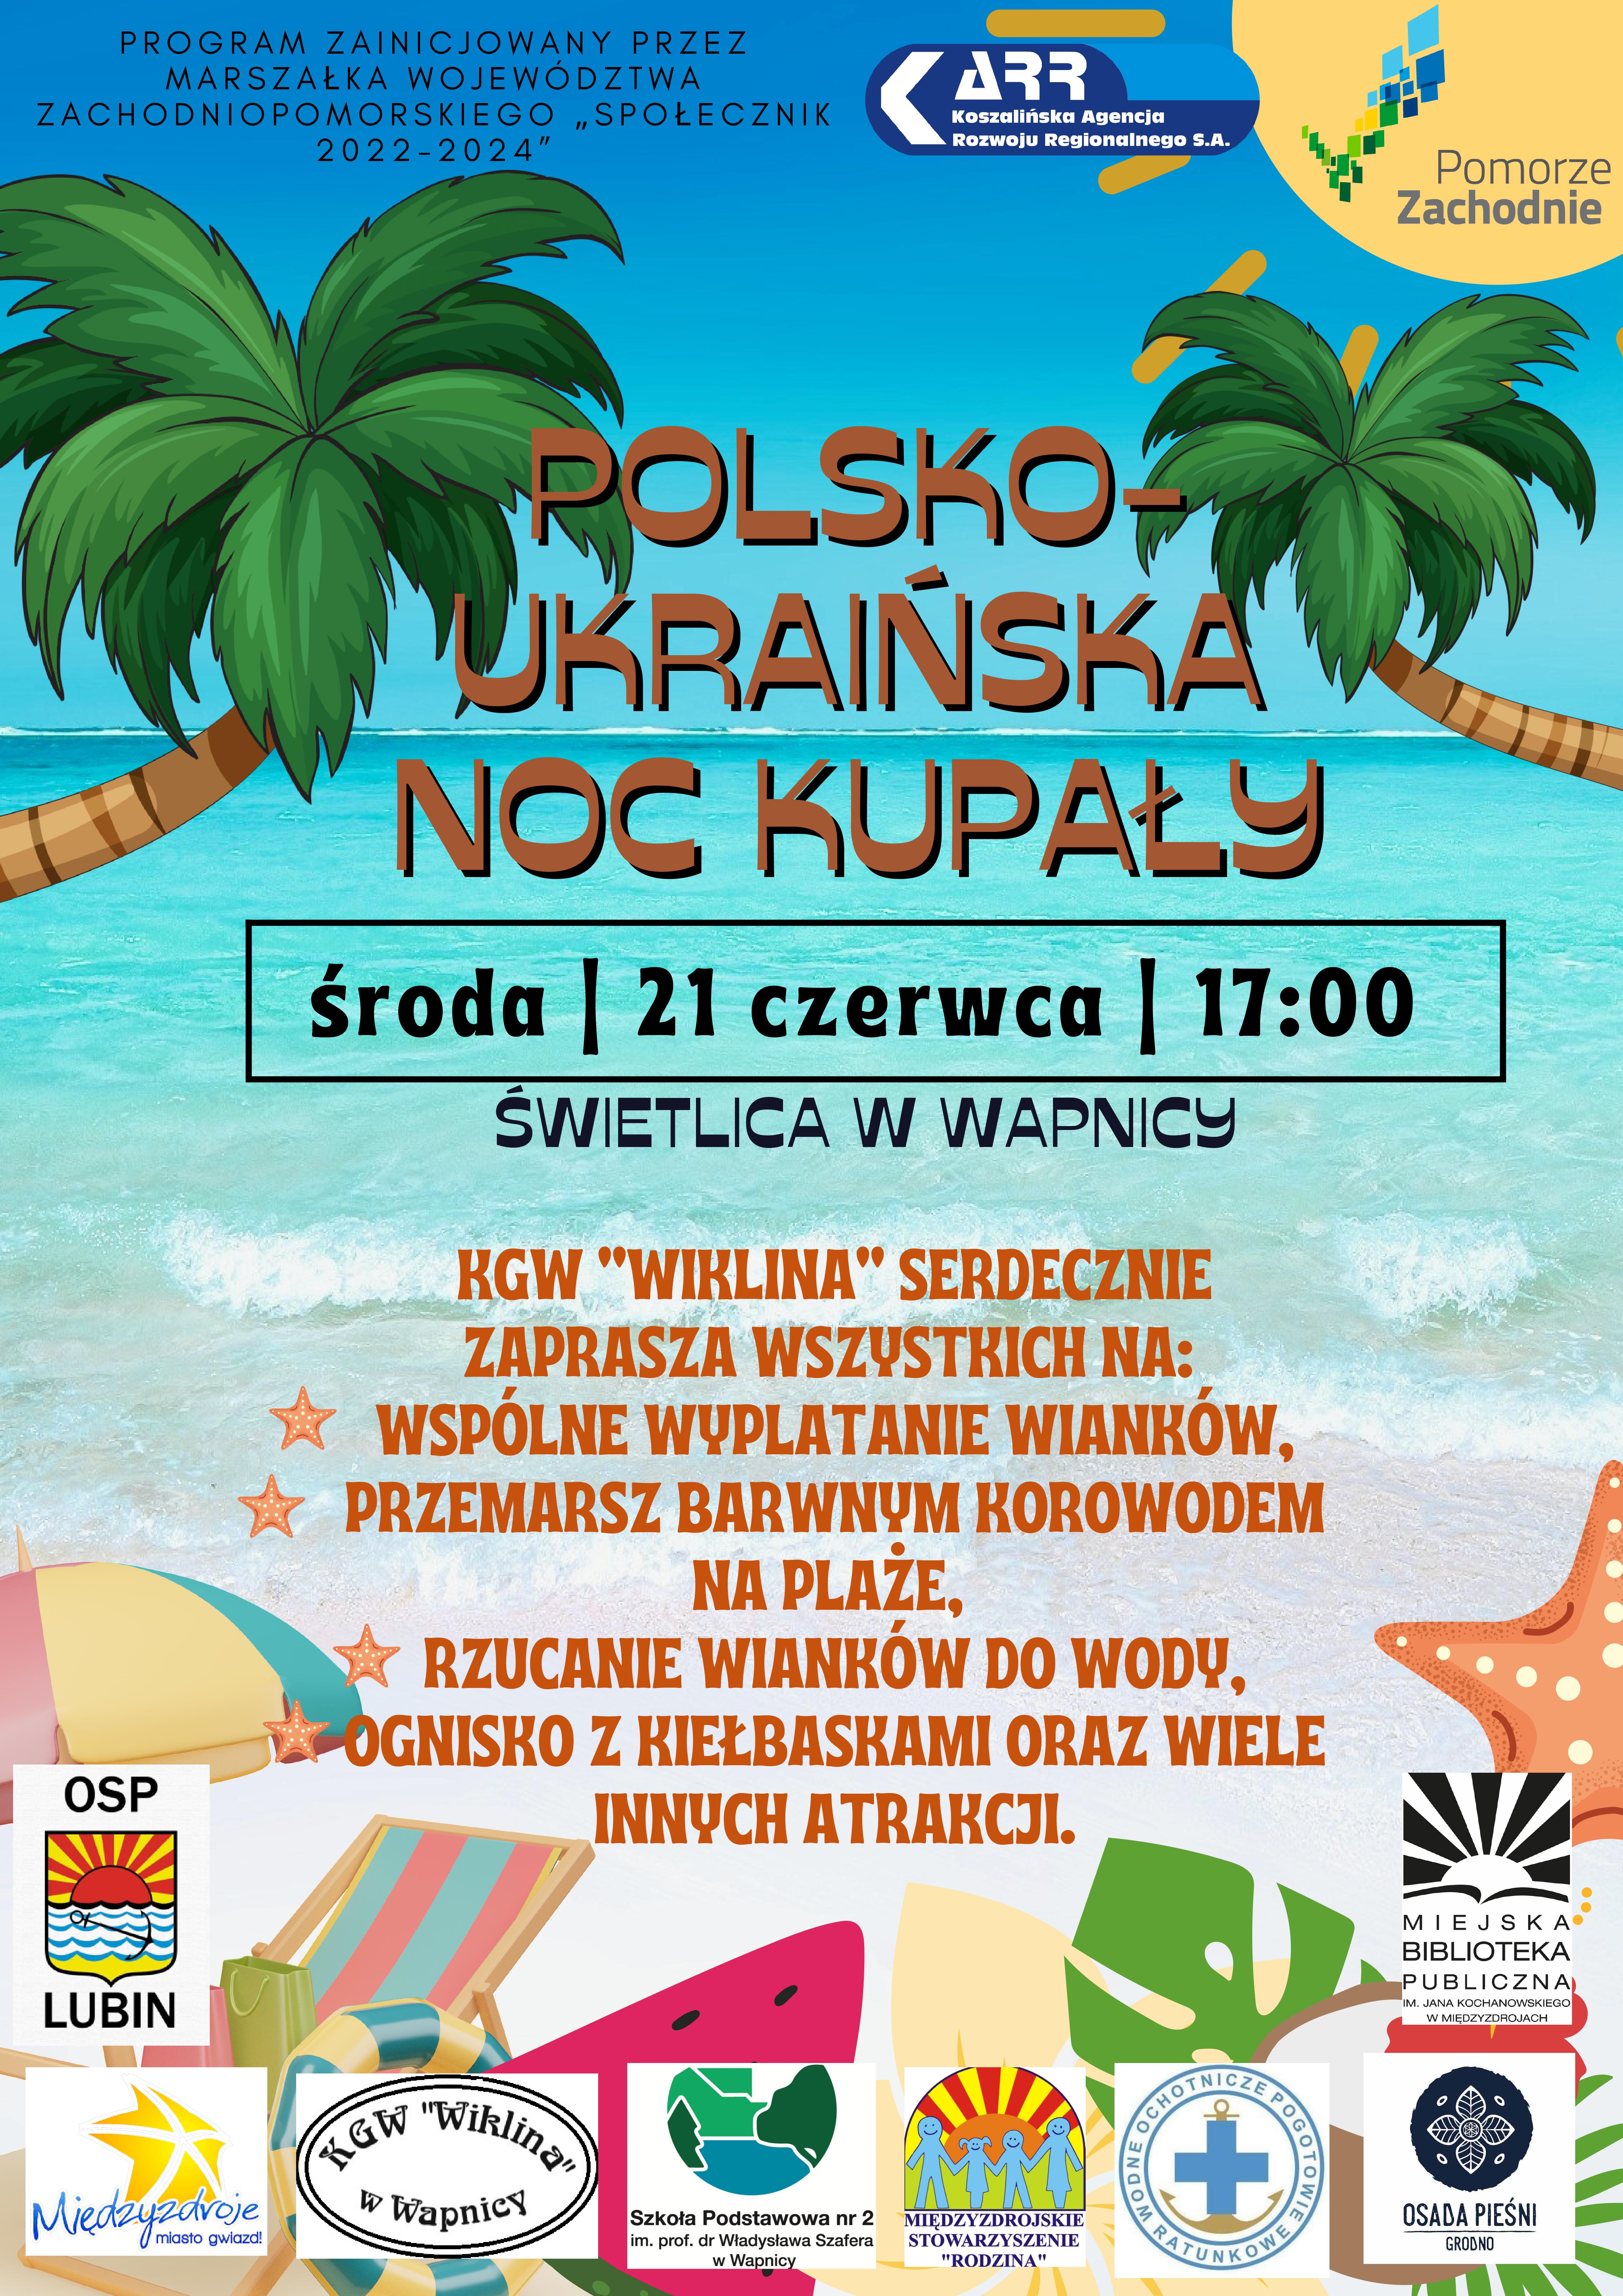 Polsko-ukraińska Noc Kupały 21 czerwca 2023 r. - zapowiedź 